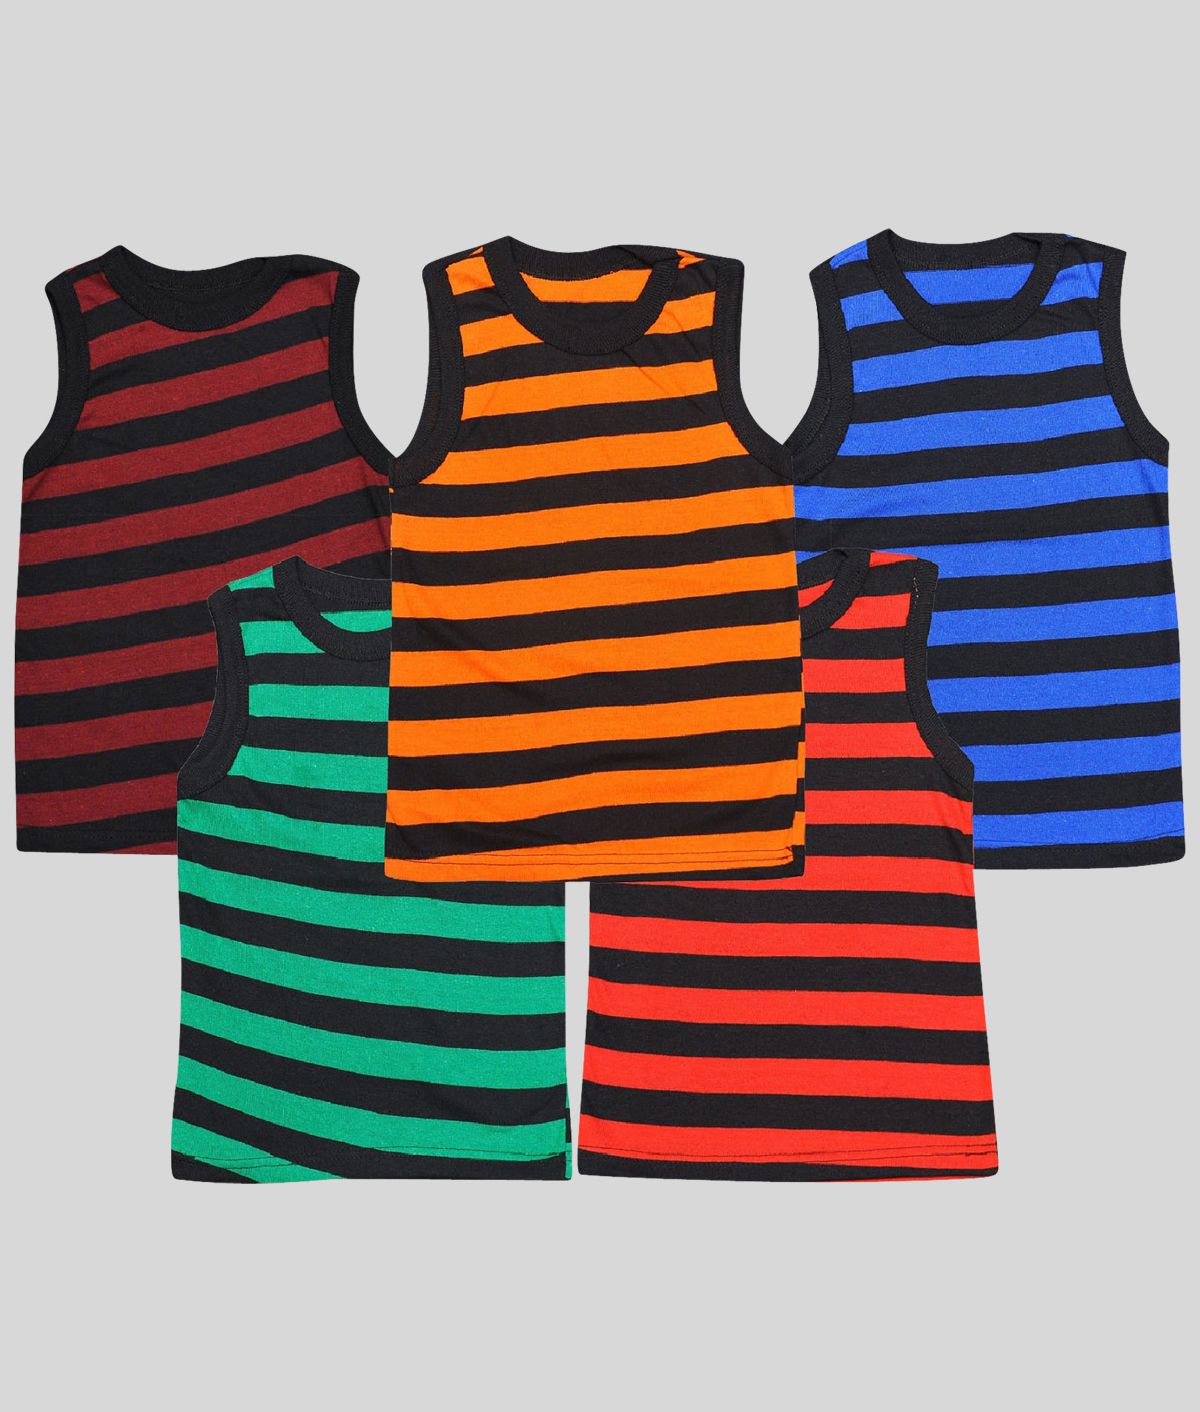     			Boys Vest Pure Cotton  (Multicolor, Pack of 5)